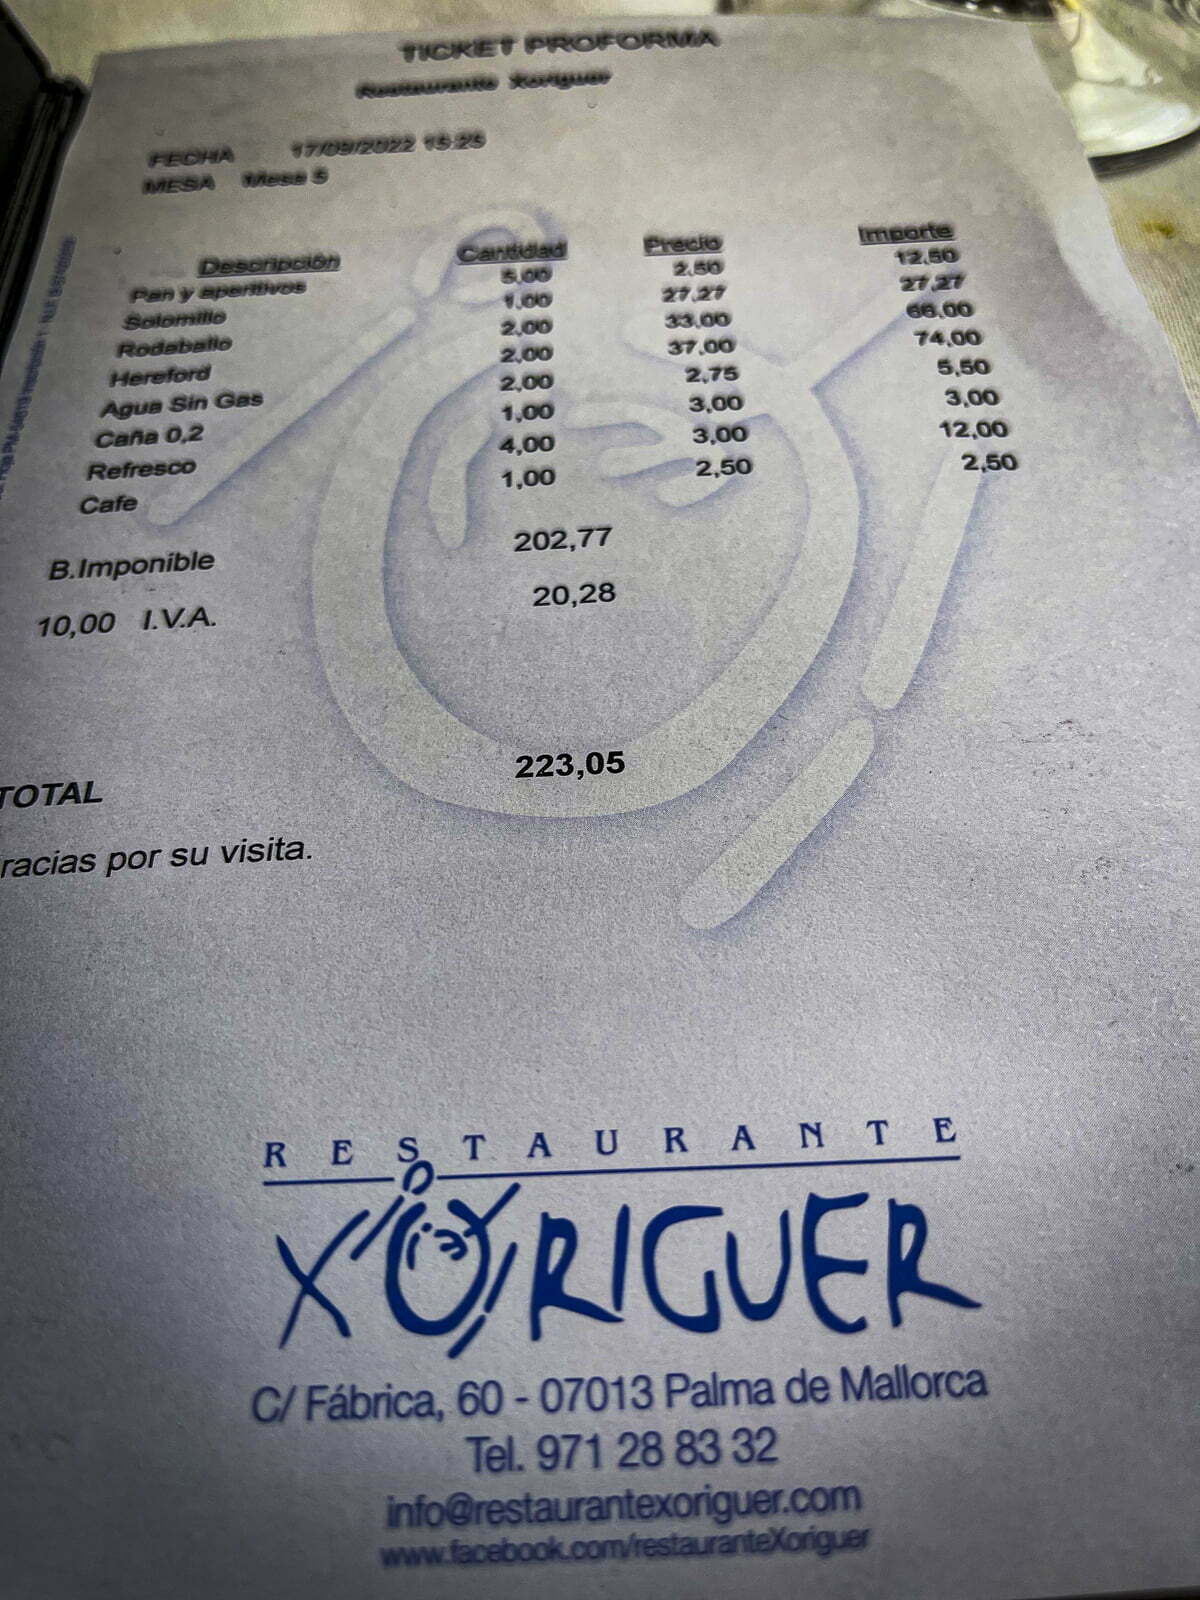 Restaurante Xoriguer Bill